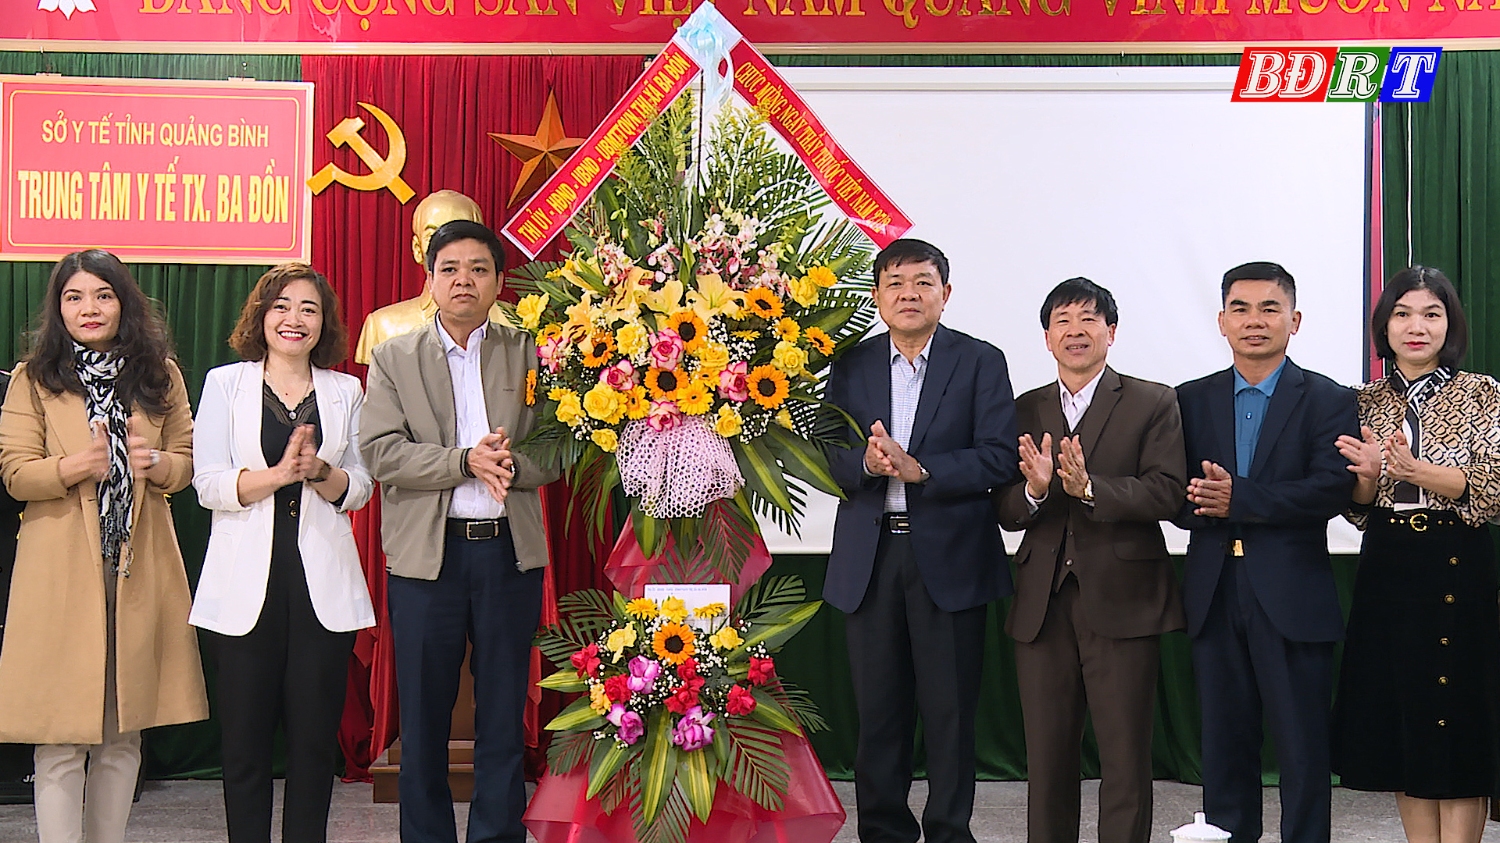 Đồng chí Chủ tịch UBND thị xã Đoàn Minh Thọ tặng hoa chúc mừng Trung tâm y tế thị xã Ba Đồn.